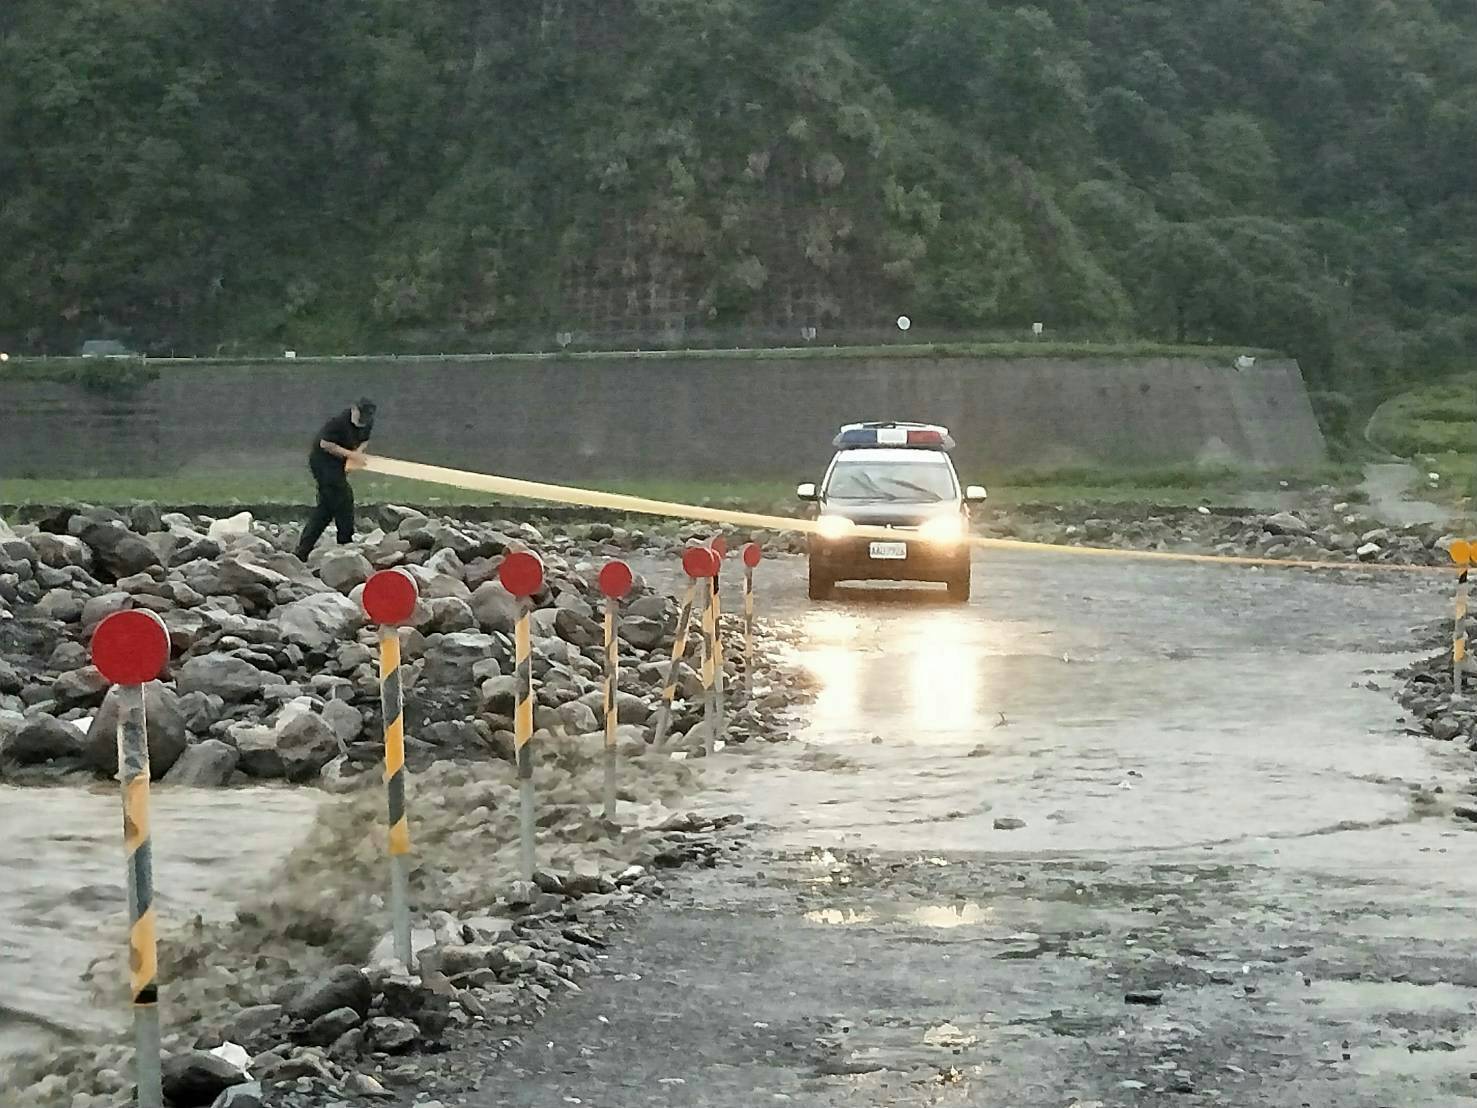 溪床河水暴漲急封路 警方:非必要避免進入山區活動